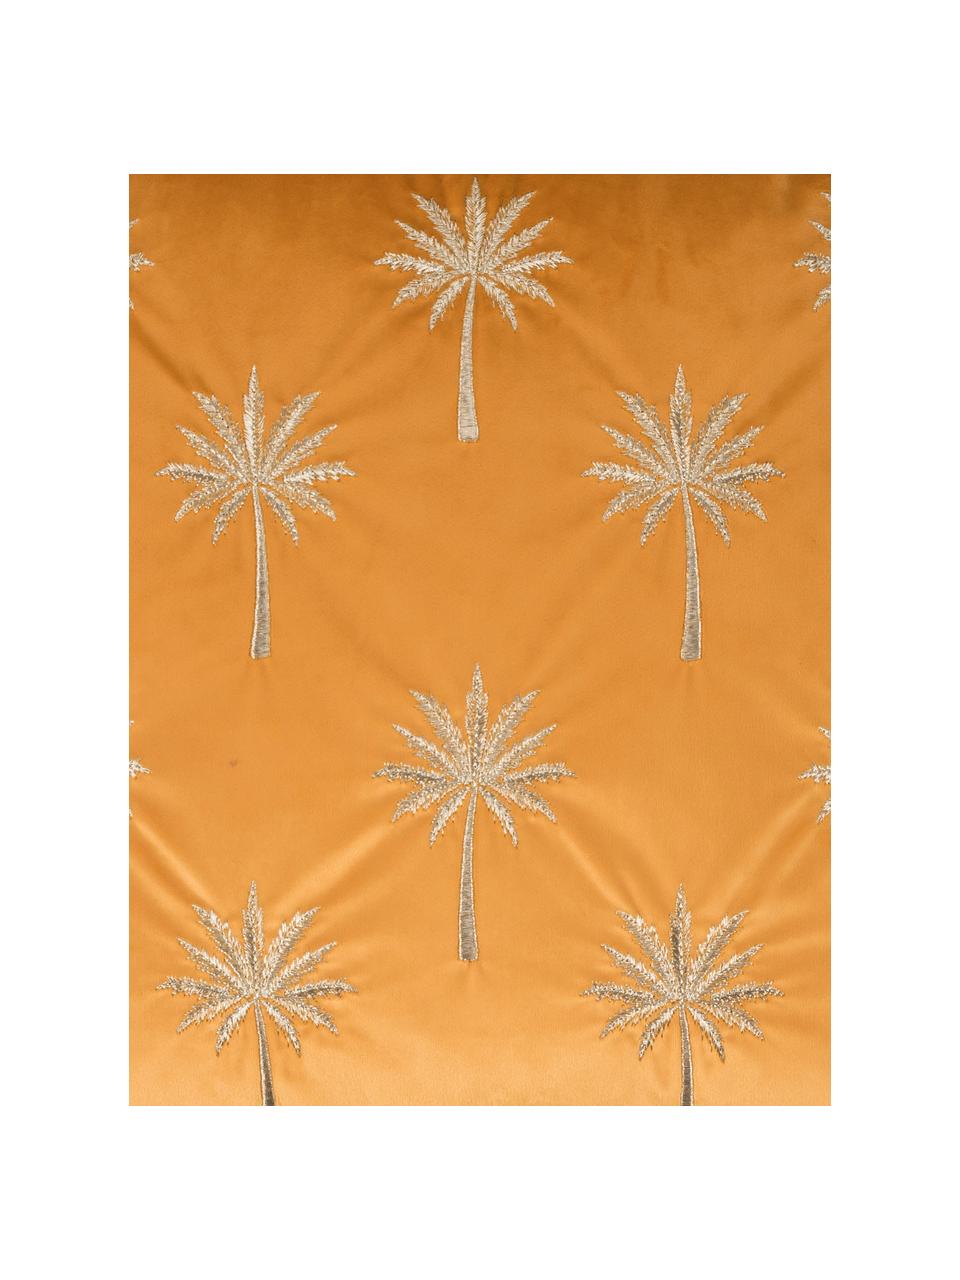 Bestickte Samt-Kissenhülle Palms mit Keder, 100% Samt (Polyester), Orangegelb, Goldfarben, 45 x 45 cm